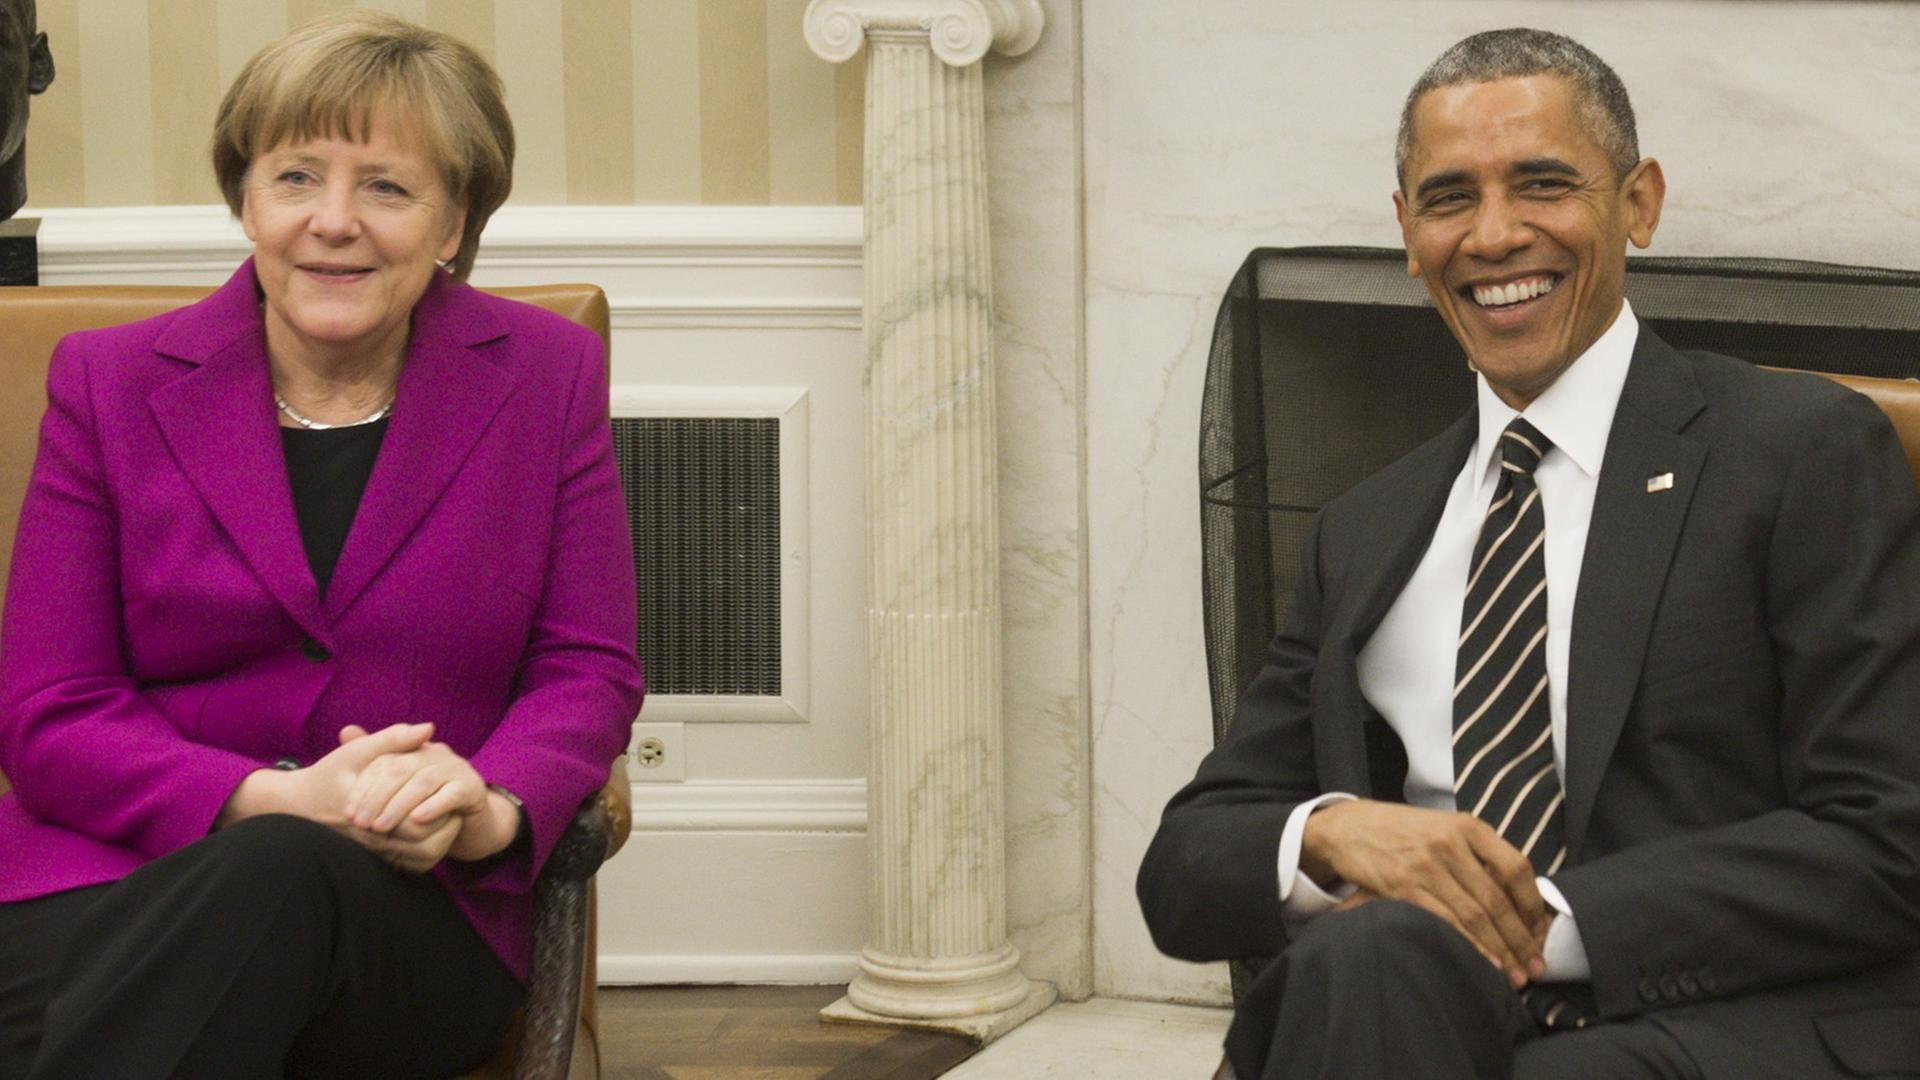 Bundeskanzlerin Angela Merkel und US-Präsident Barack Obama im Oval Office. Beide lachen in die Kameras.